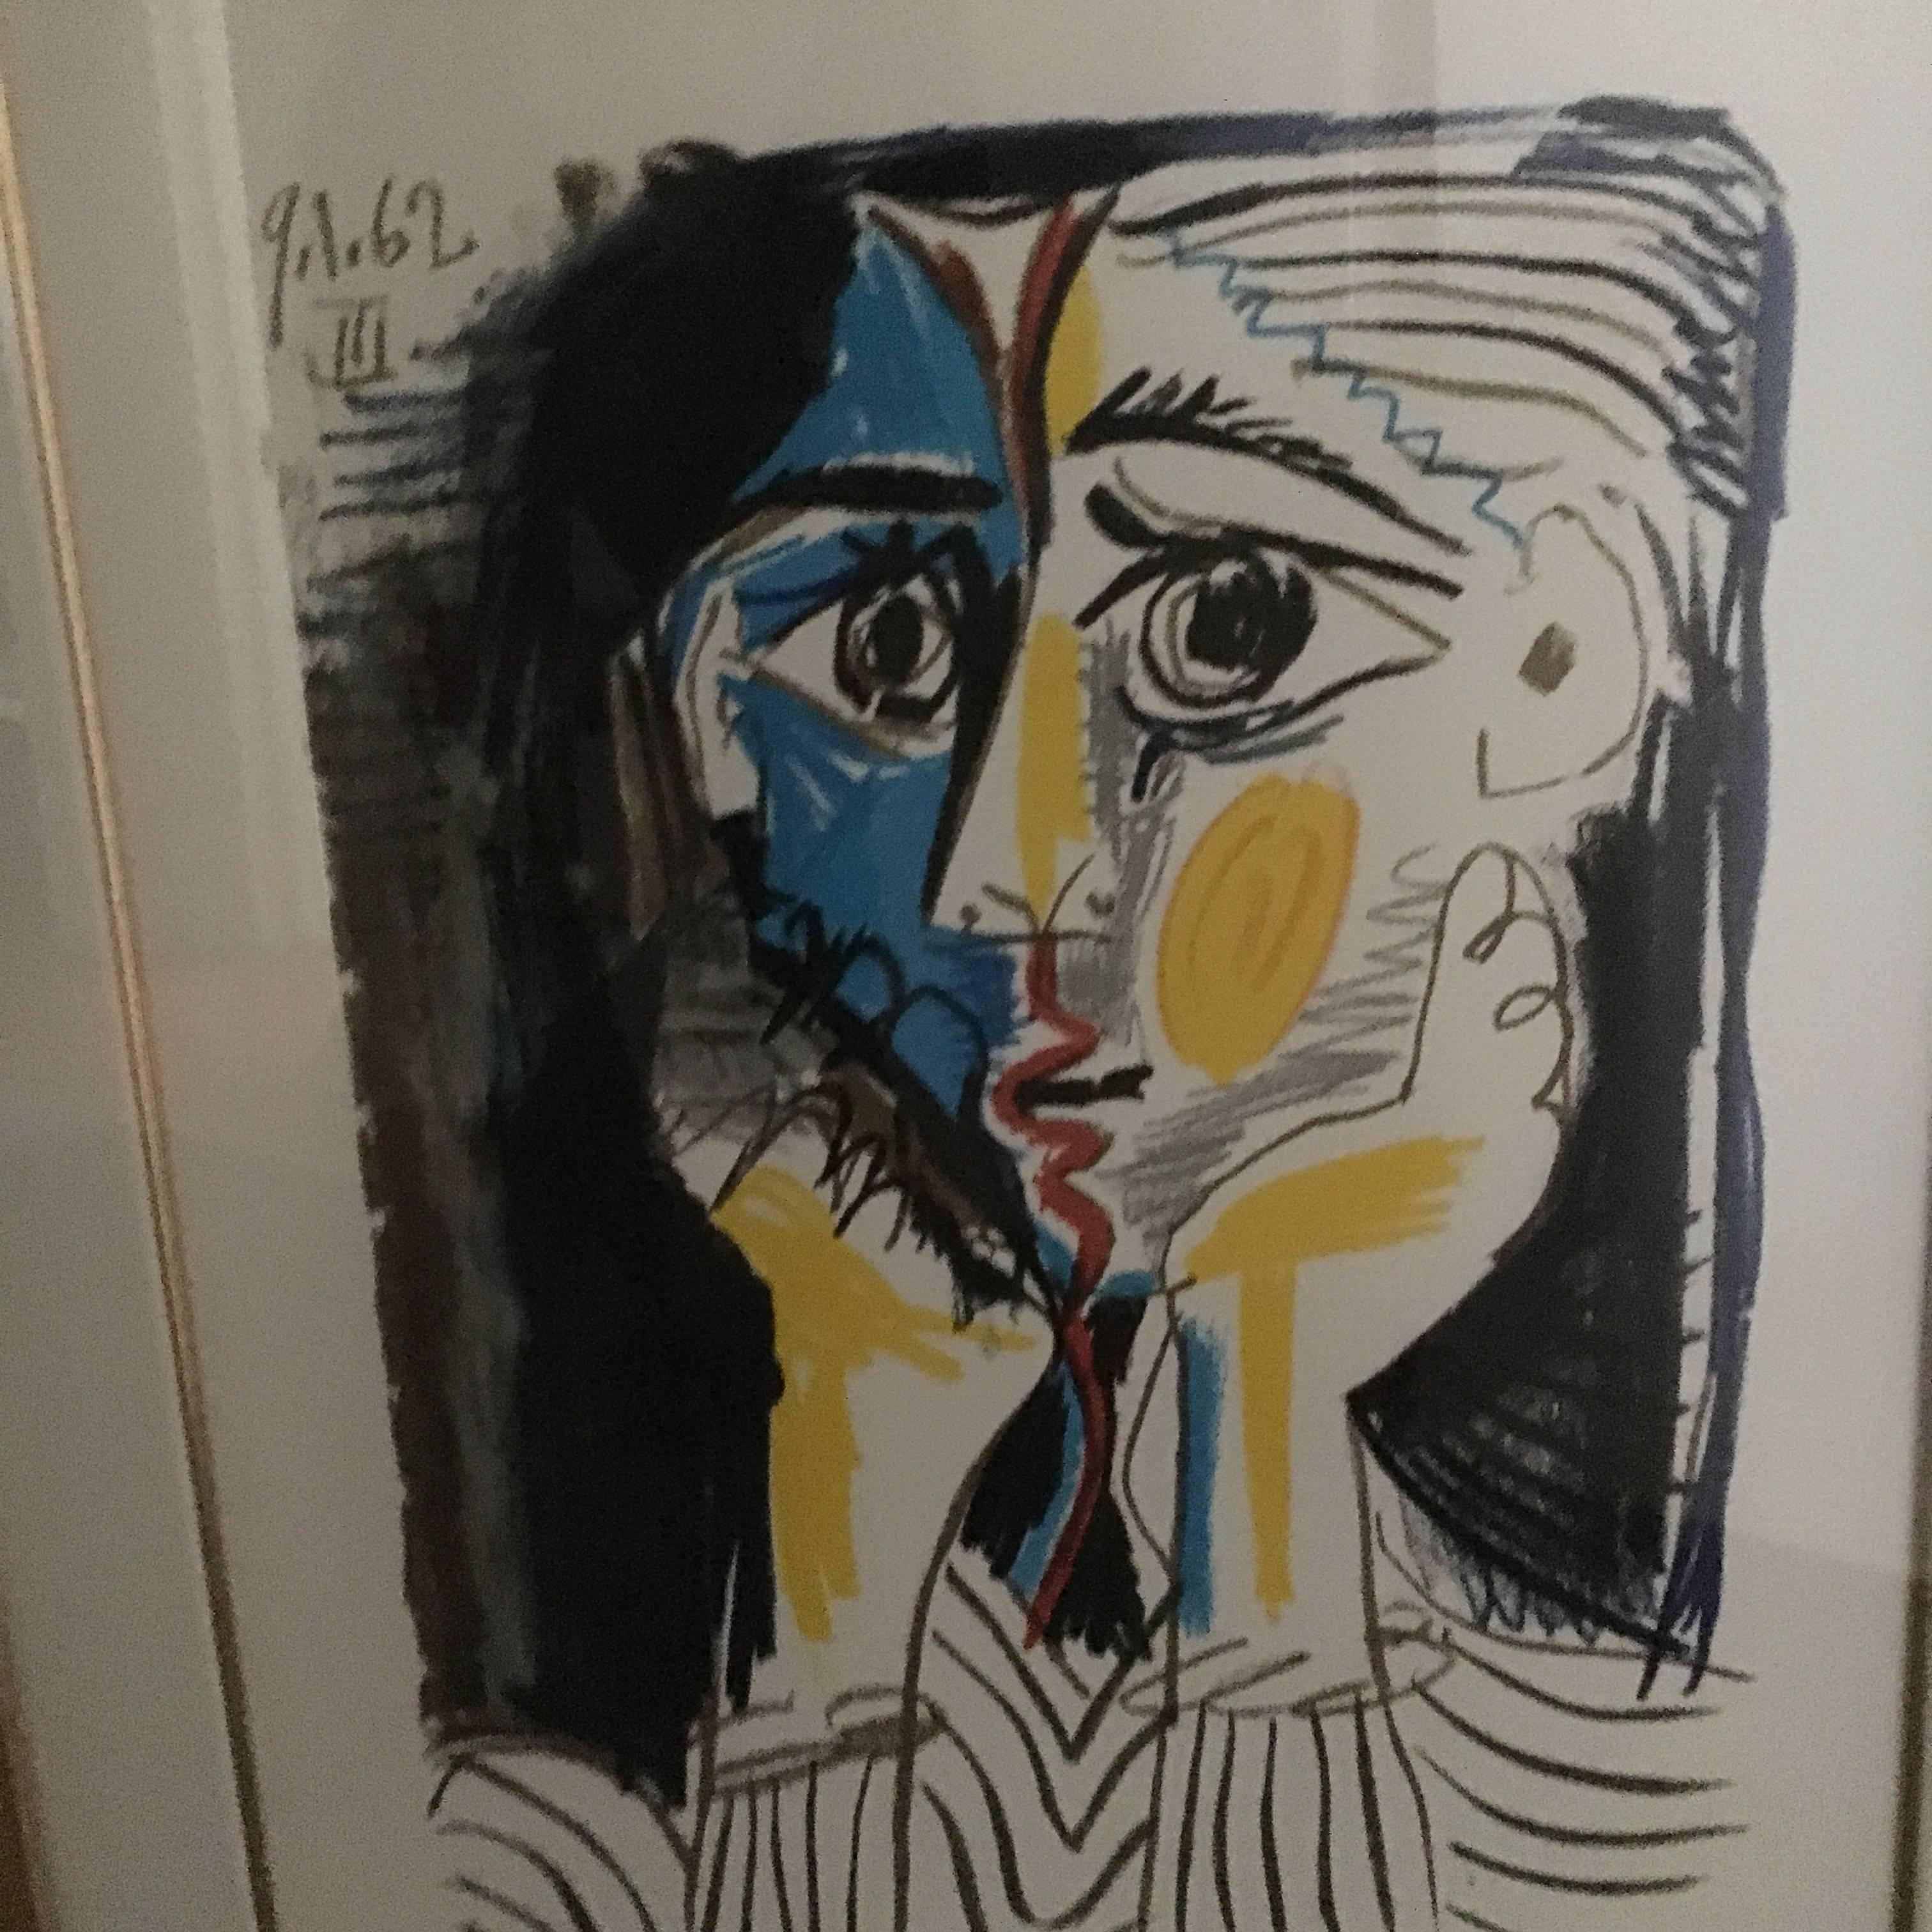 Lithographie de Picasso signée Marina Picasso, cadre en bois doré.

En 1962, à l'apogée de sa carrière, Pablo Ruiz Picasso a réalisé un carnet d'images qui démontre la grandeur de son talent. Les images contenues dans ce carnet n'ont jamais été